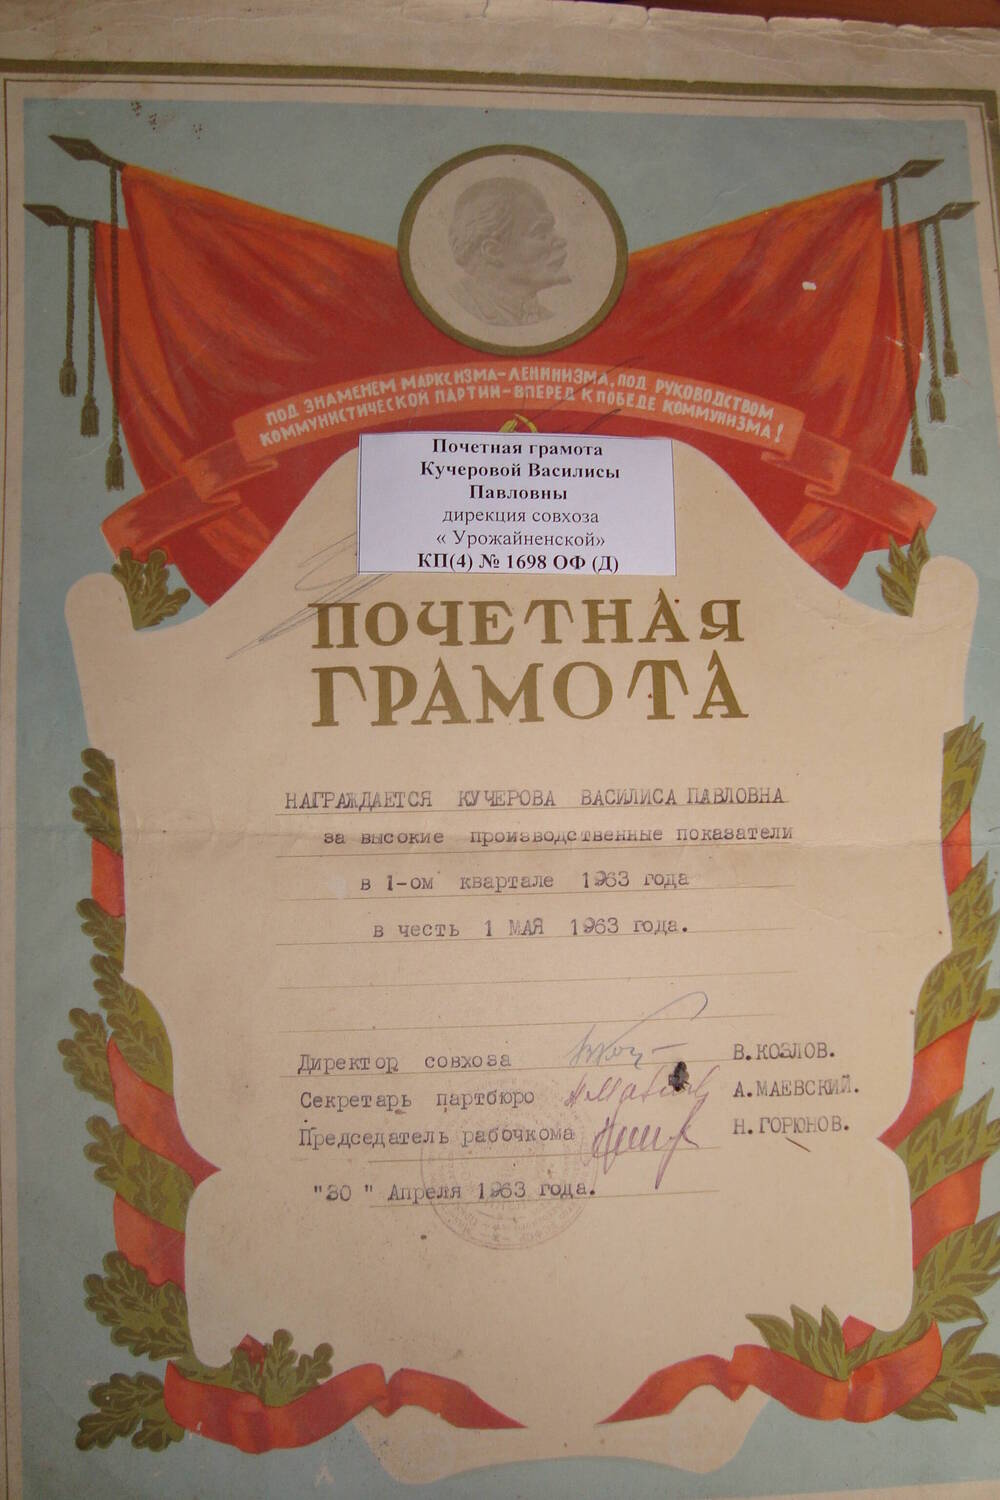 Почетная грамота Кучеровой Василисы Павловны дирекция совхоза «Урожайненский» награждает за высокие производственные показатели 30 апреля 1962 г, с. Урожайное